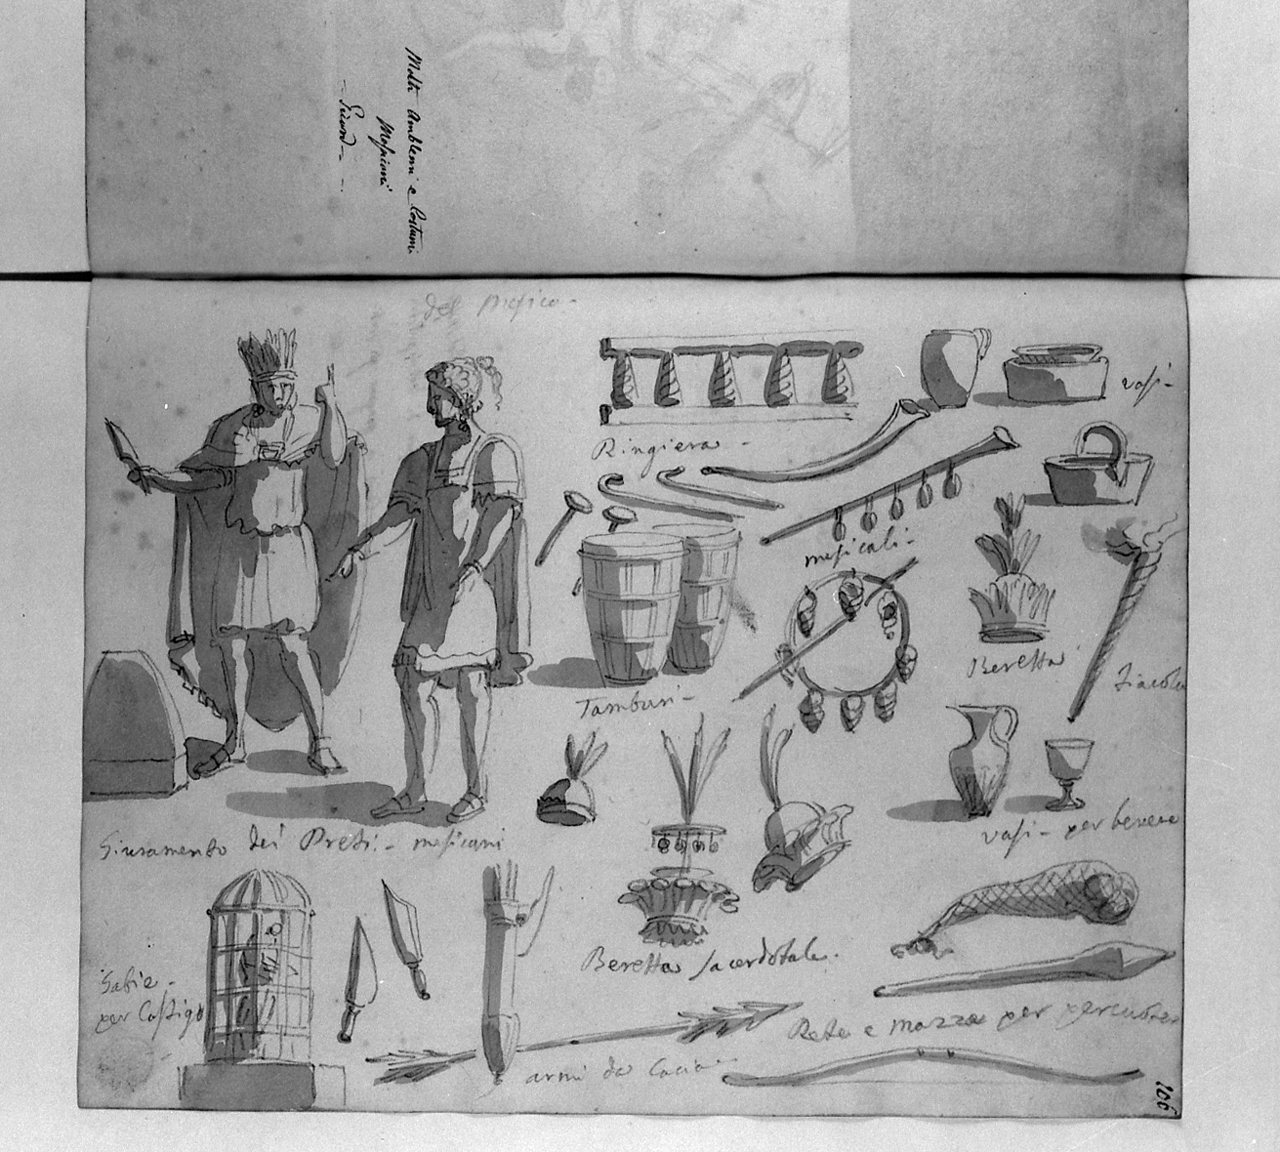 Molti Amblemi e Costumi Messicani Picard, costumi oggetti e simboli messicani (disegno, elemento d'insieme) di Basoli Antonio (sec. XIX)